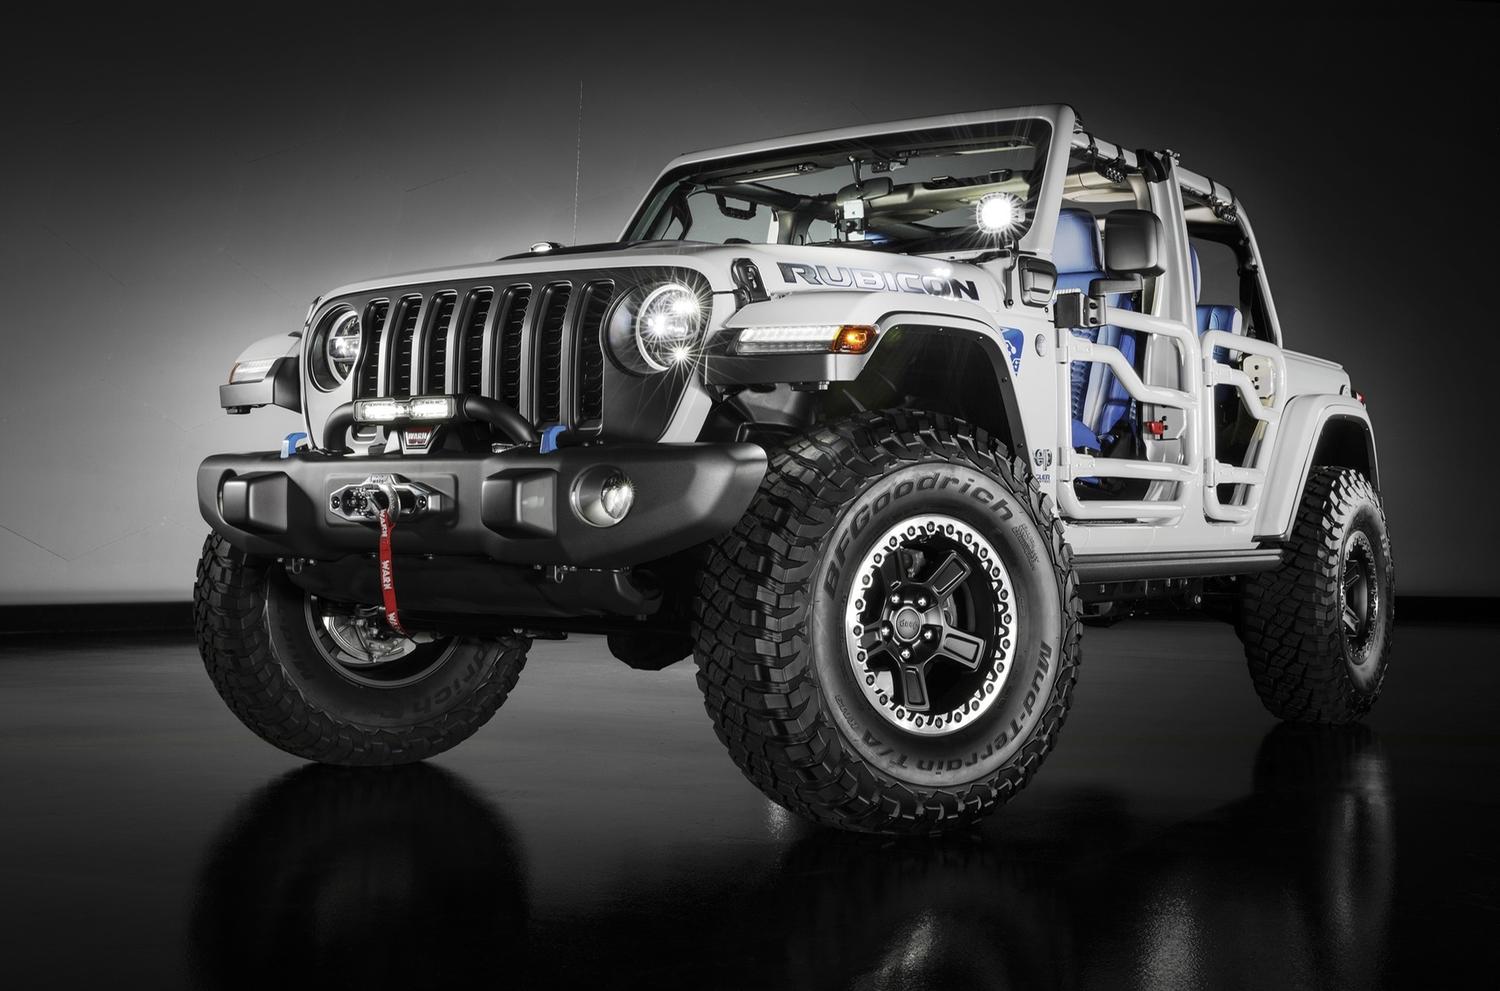 Jeep SEMA üçün güclü və ekstremal görünən iki inanılmaz 2021 Wrangler konseptini təqdim etdi